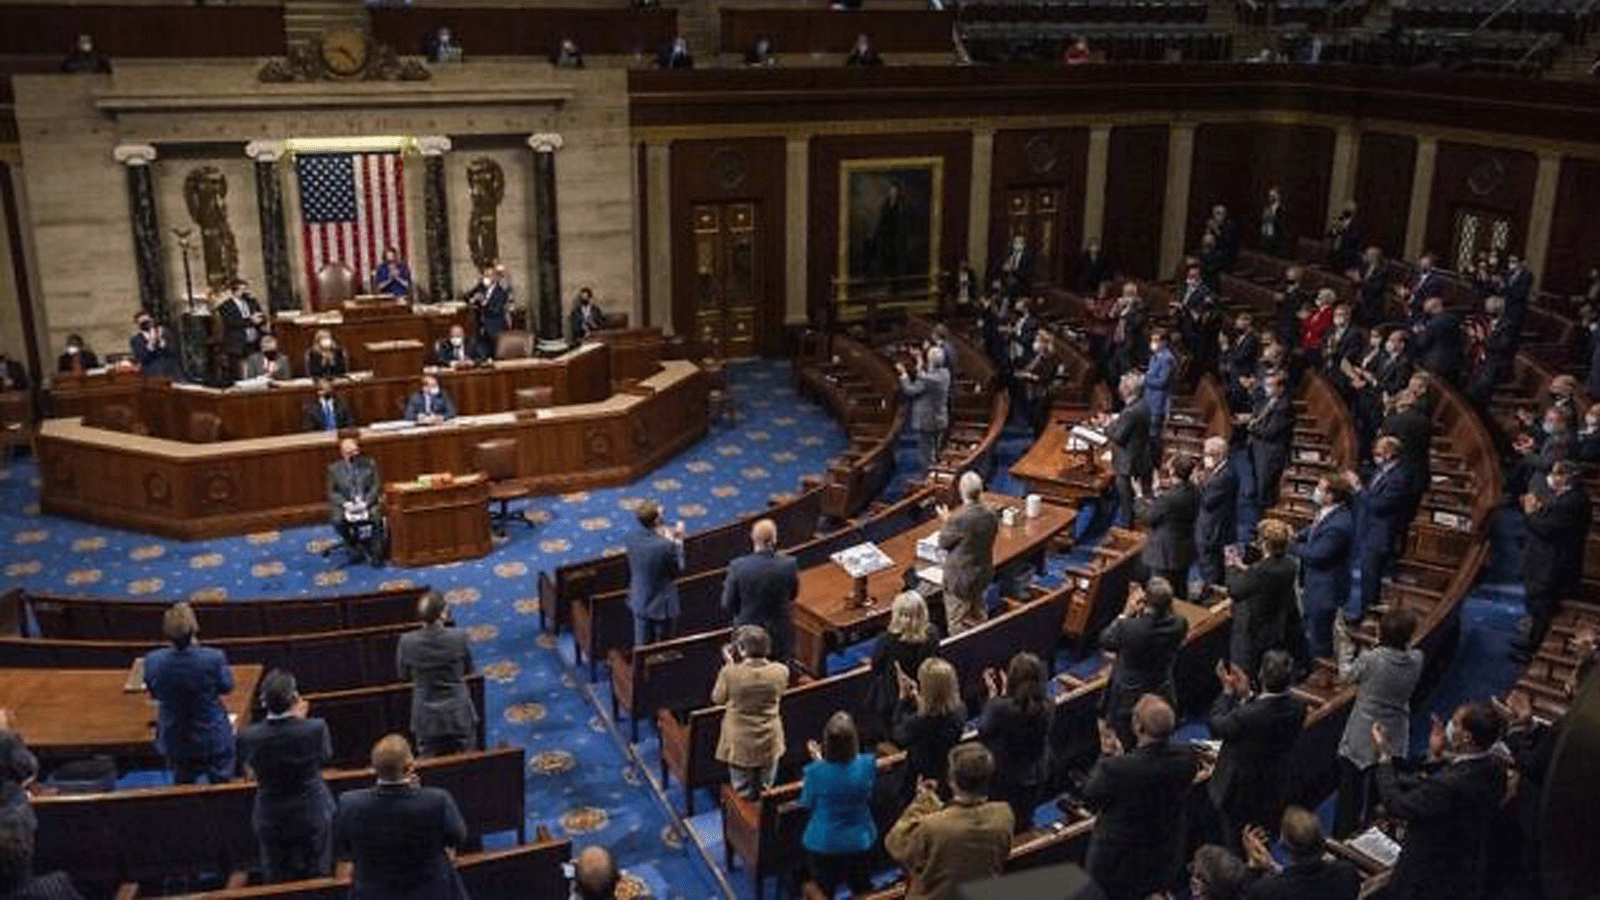 رئيسة مجلس النواب الأمريكي نانسي بيلوسي تترأس جلسة مشتركة مستأنفة للكونغرس في غرفة مجلس النواب في 6 كانون الثاني/يناير 2021 في واشنطن.